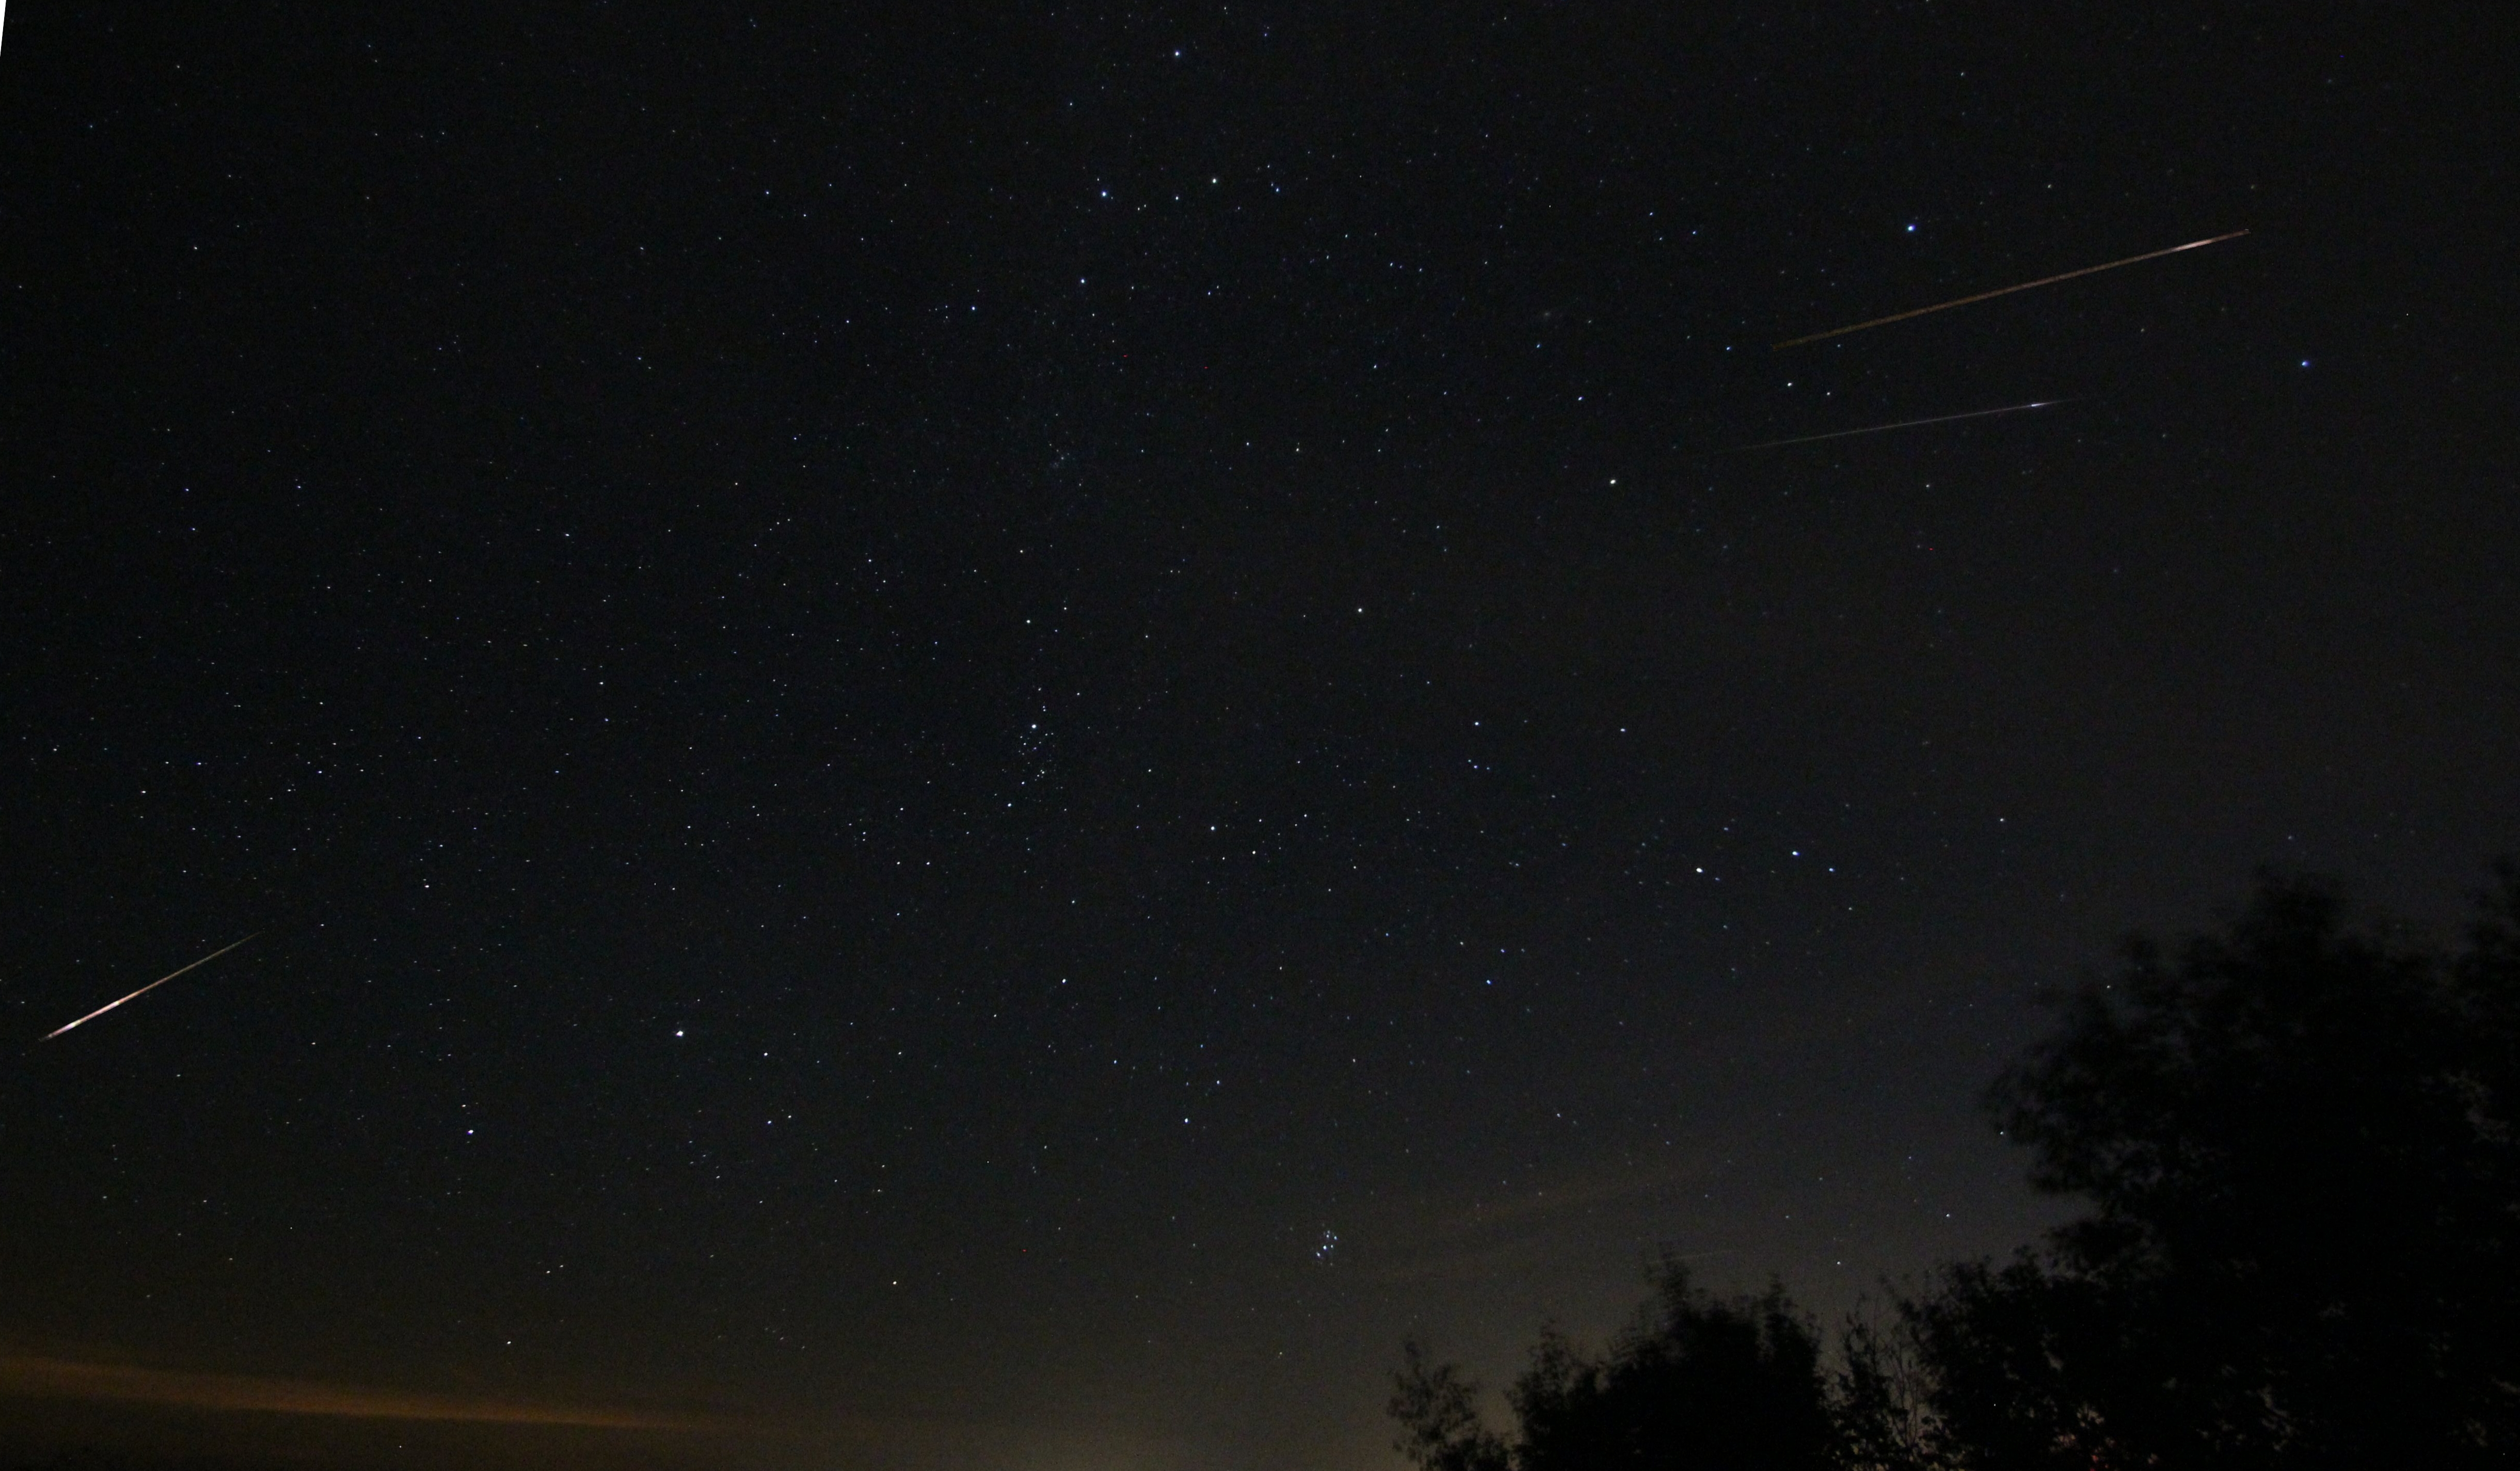 Three Perseid meteors